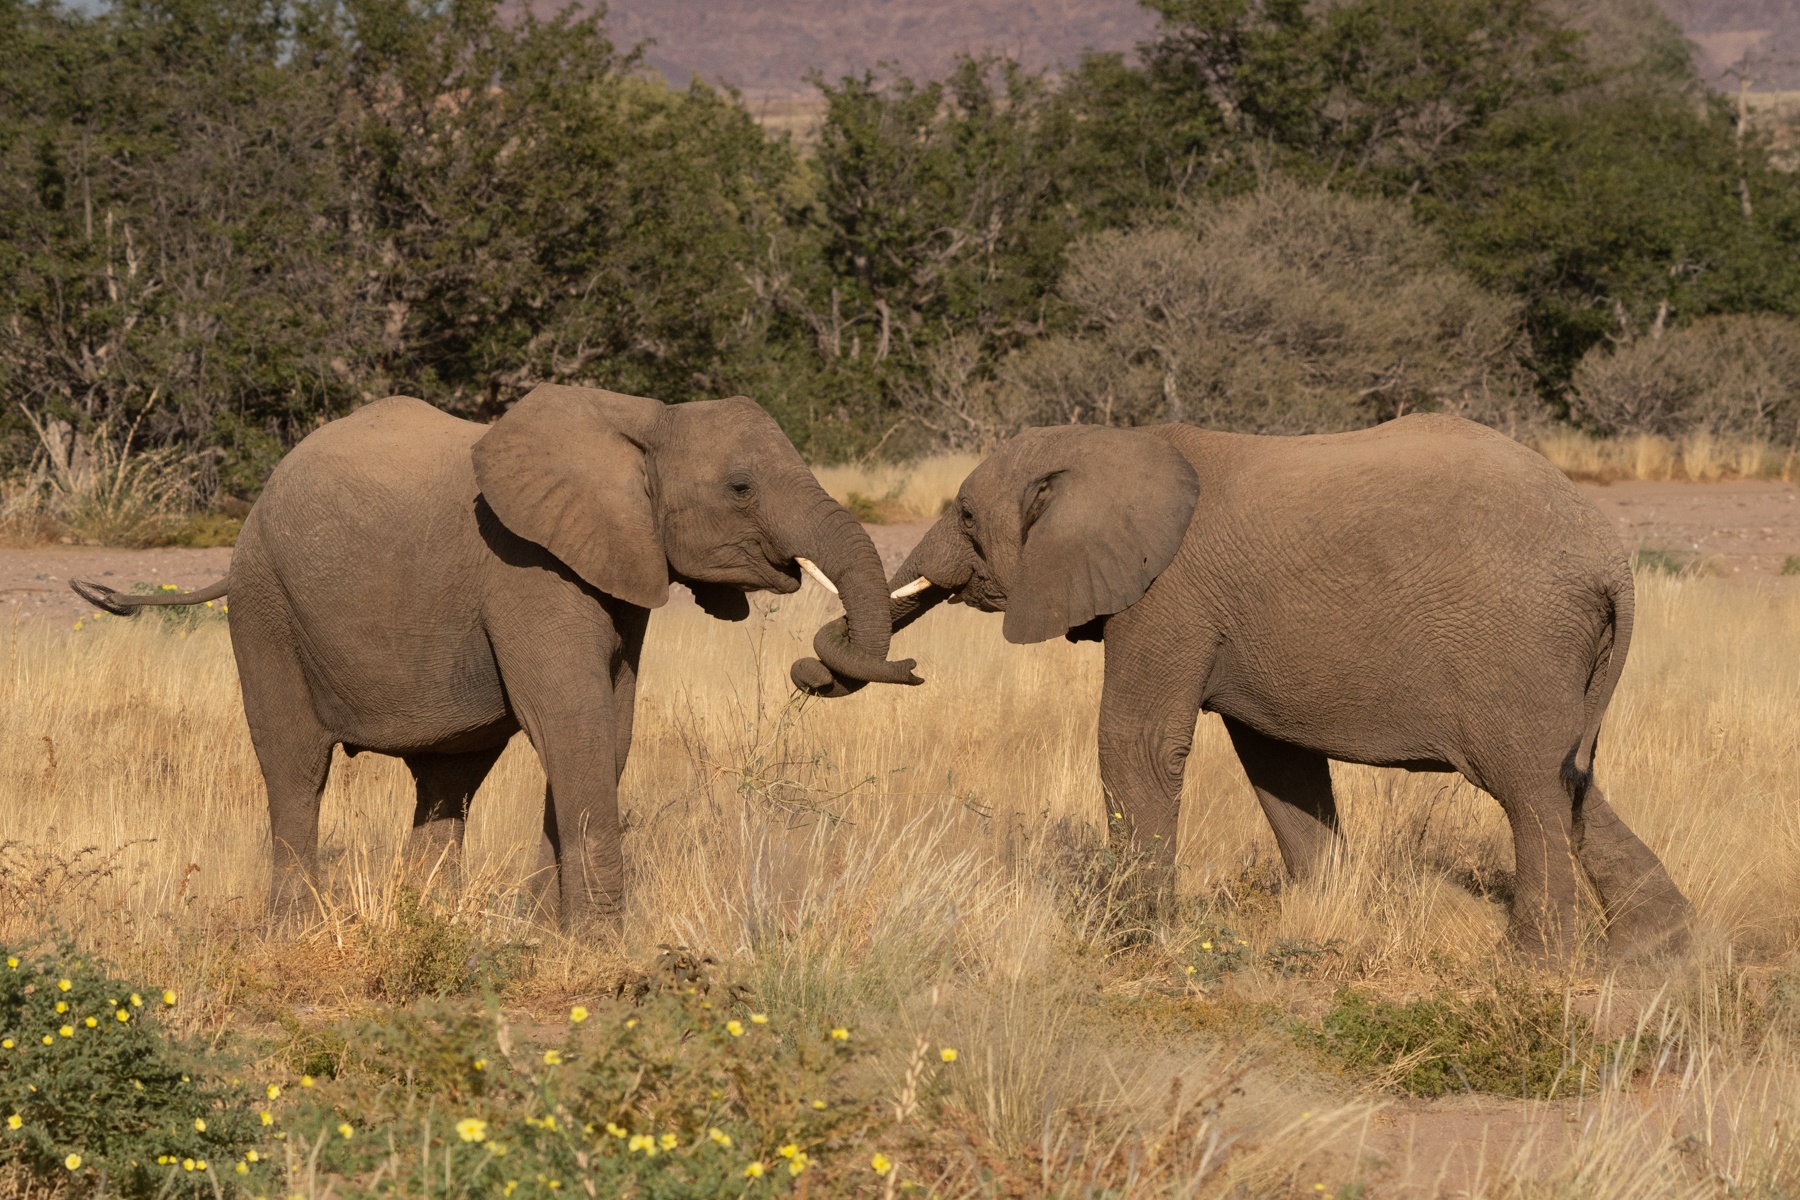 When elephants fight it sometimes looks like affection